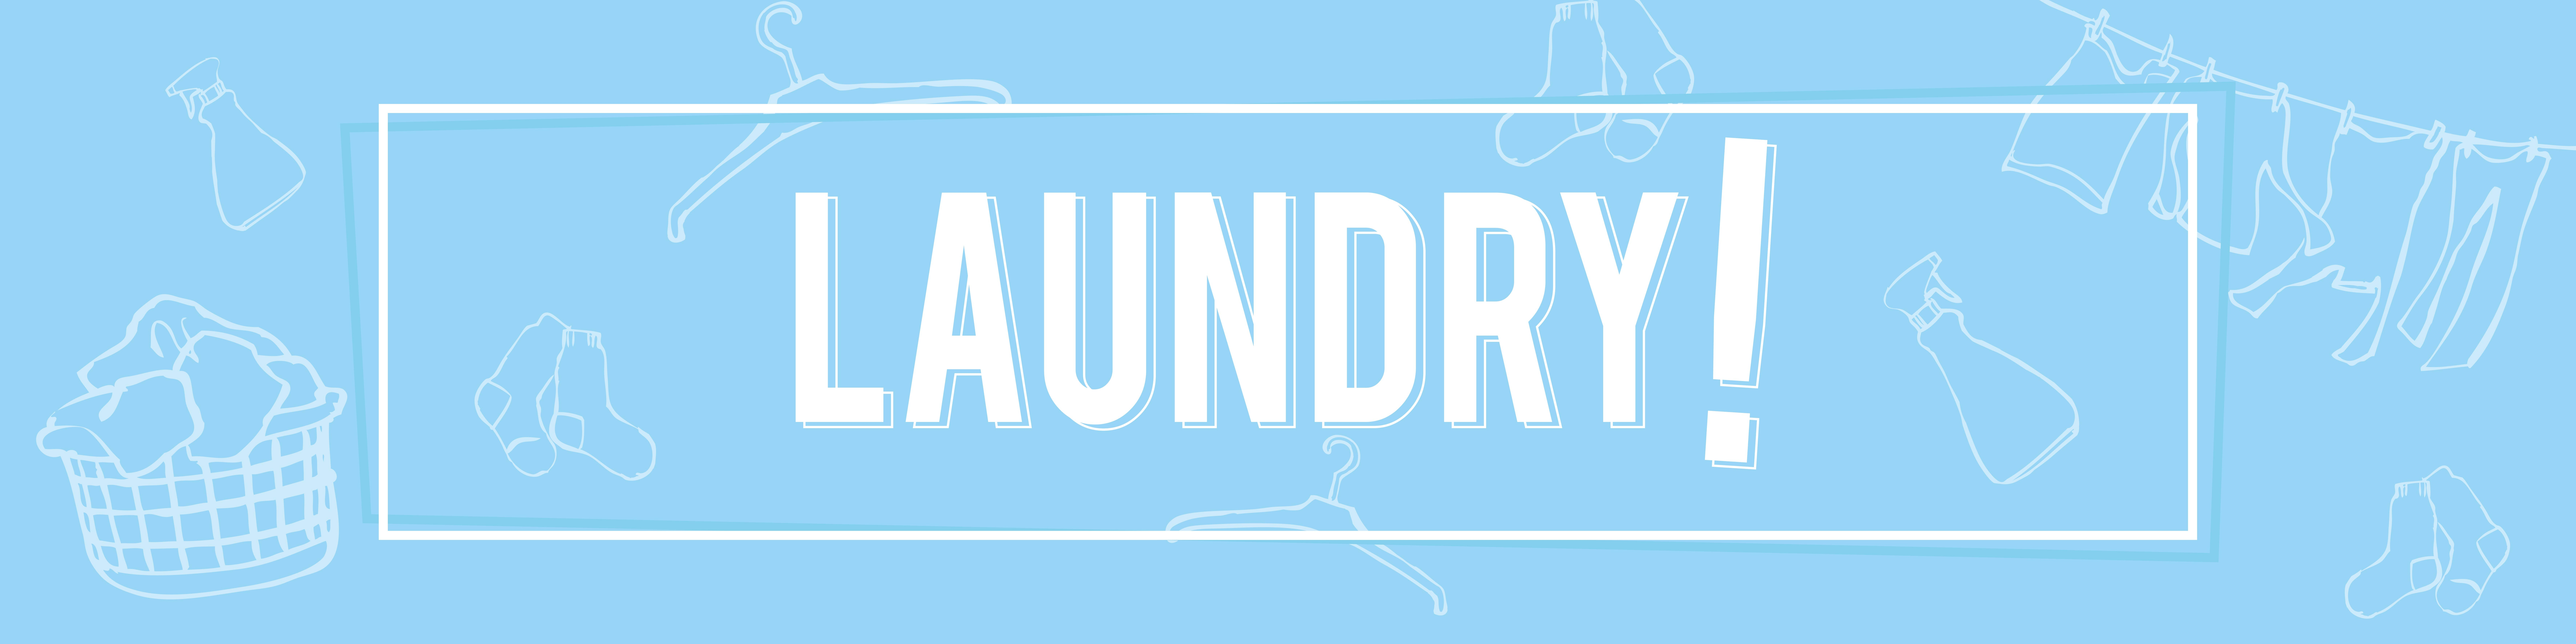 Laundry Image 